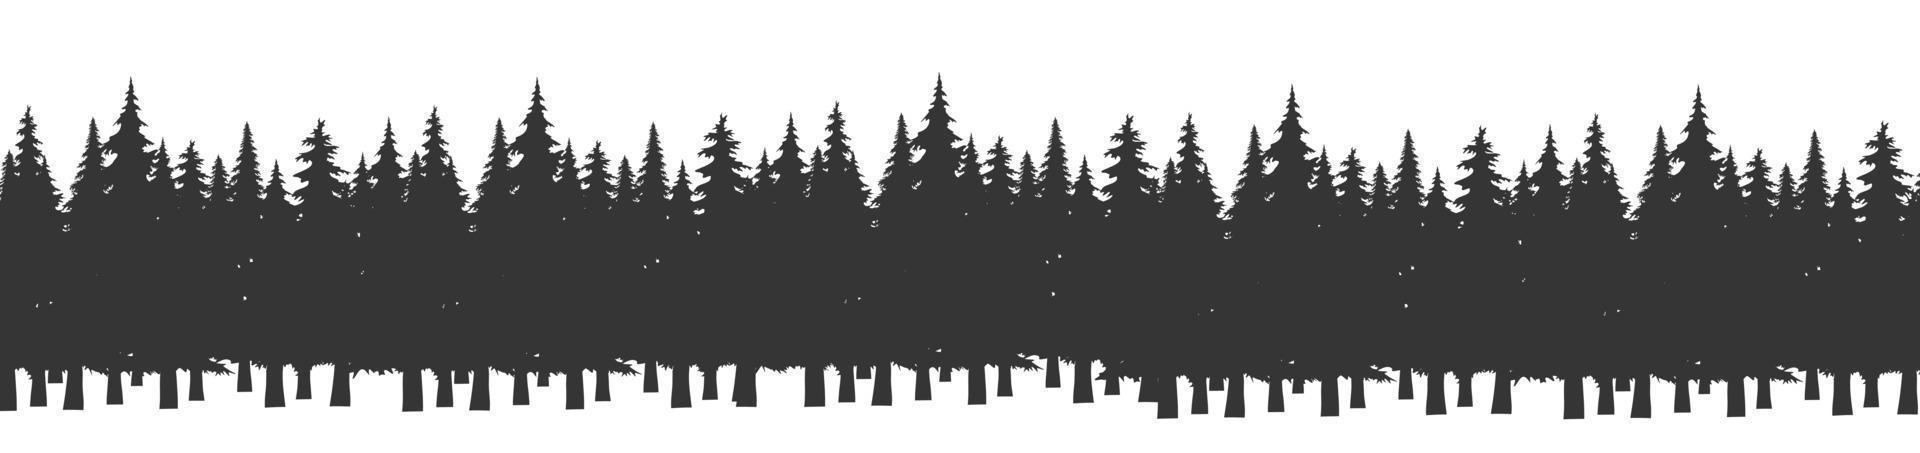 floresta de silhueta de árvores de abeto de Natal. panorama de abetos coníferos. parque de madeira perene. vetor em fundo branco